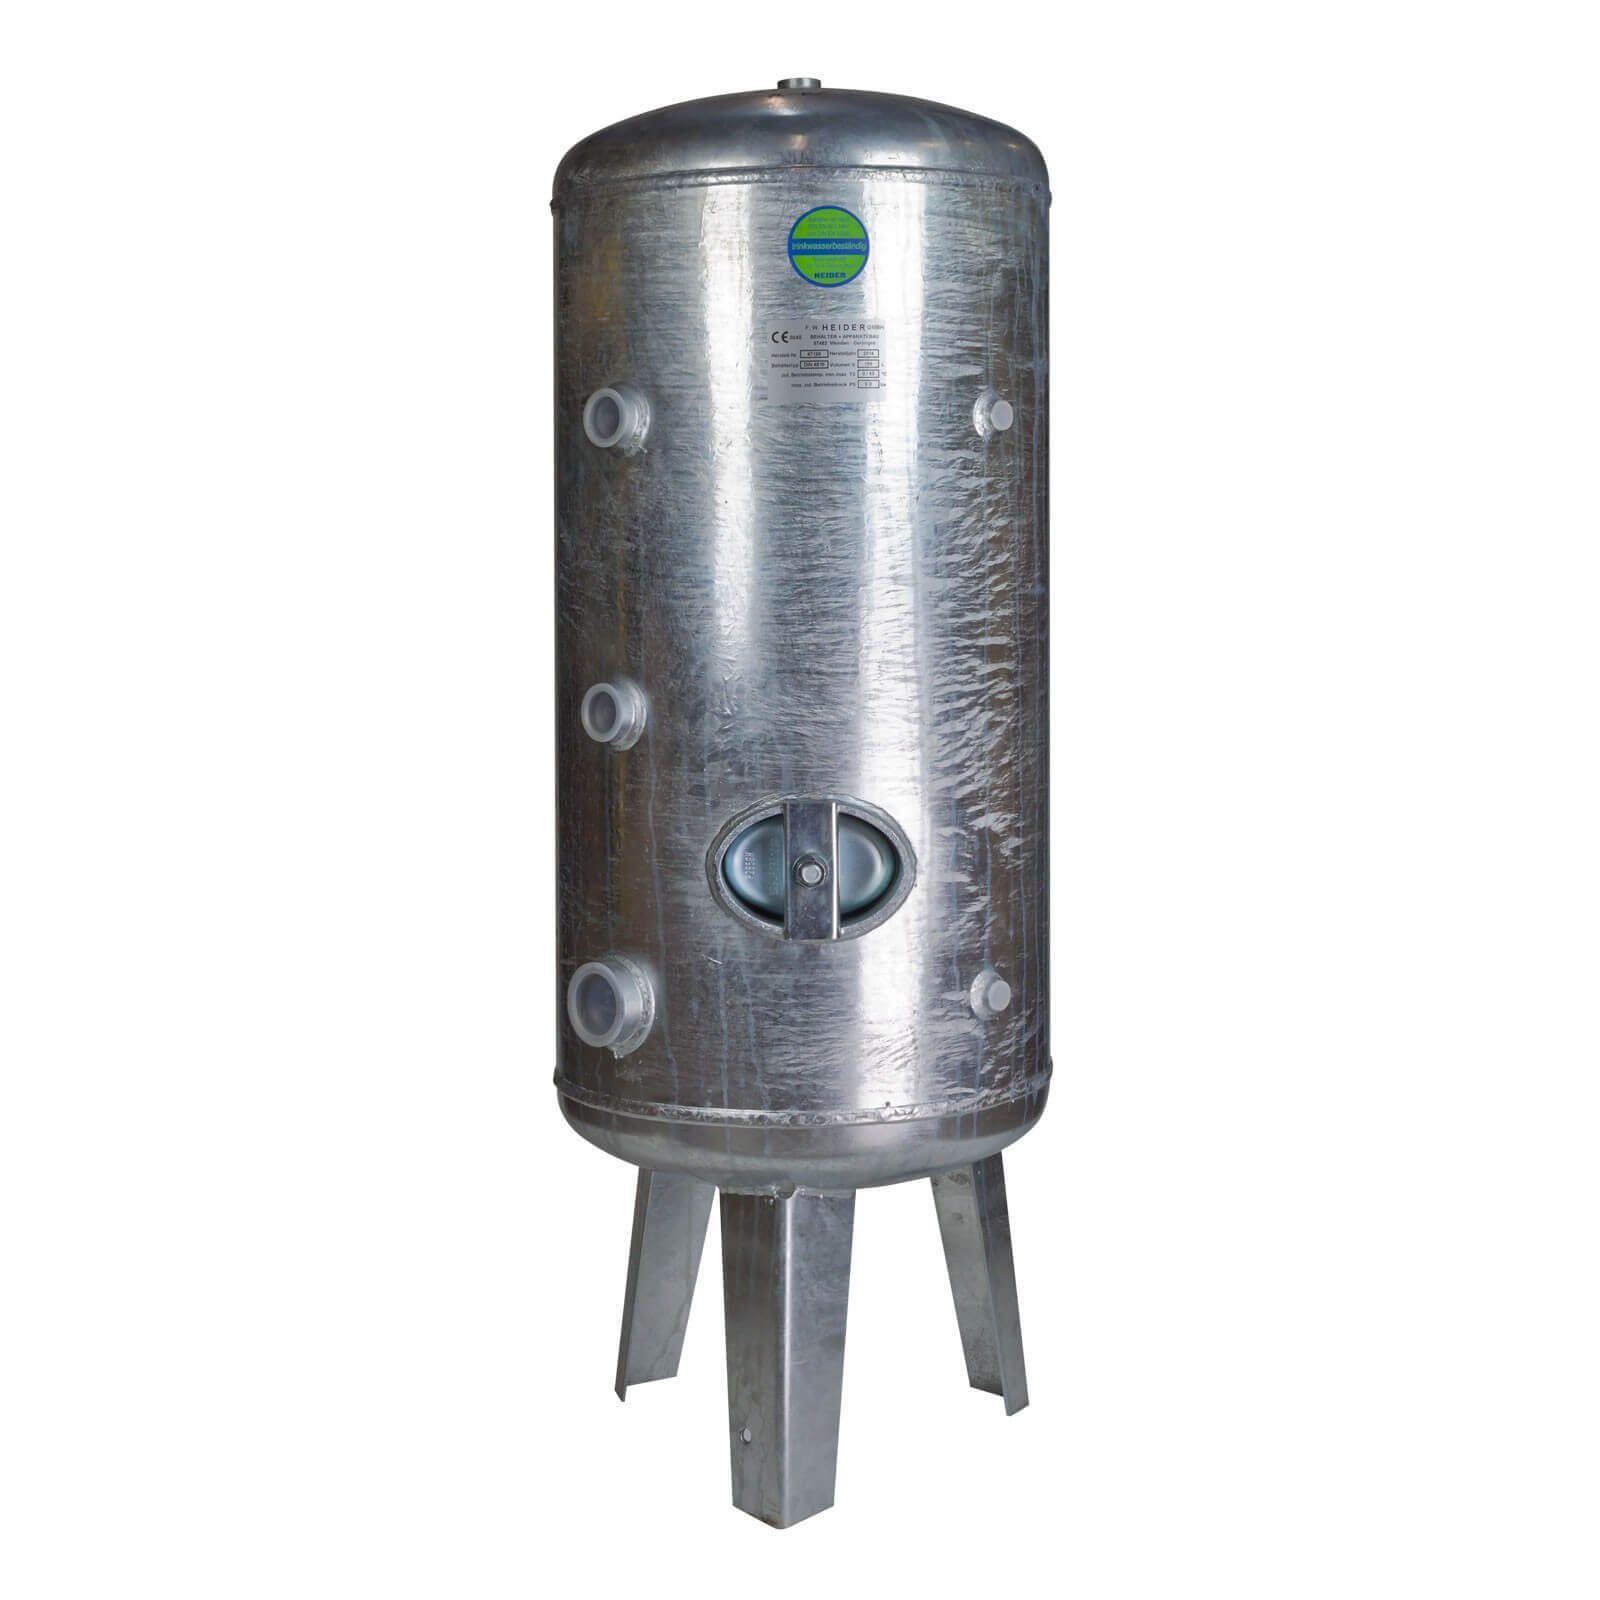 Heider Wasserkessel Heider Druckbehälter Druckkessel 150L 6bar verzinkt für Wasser